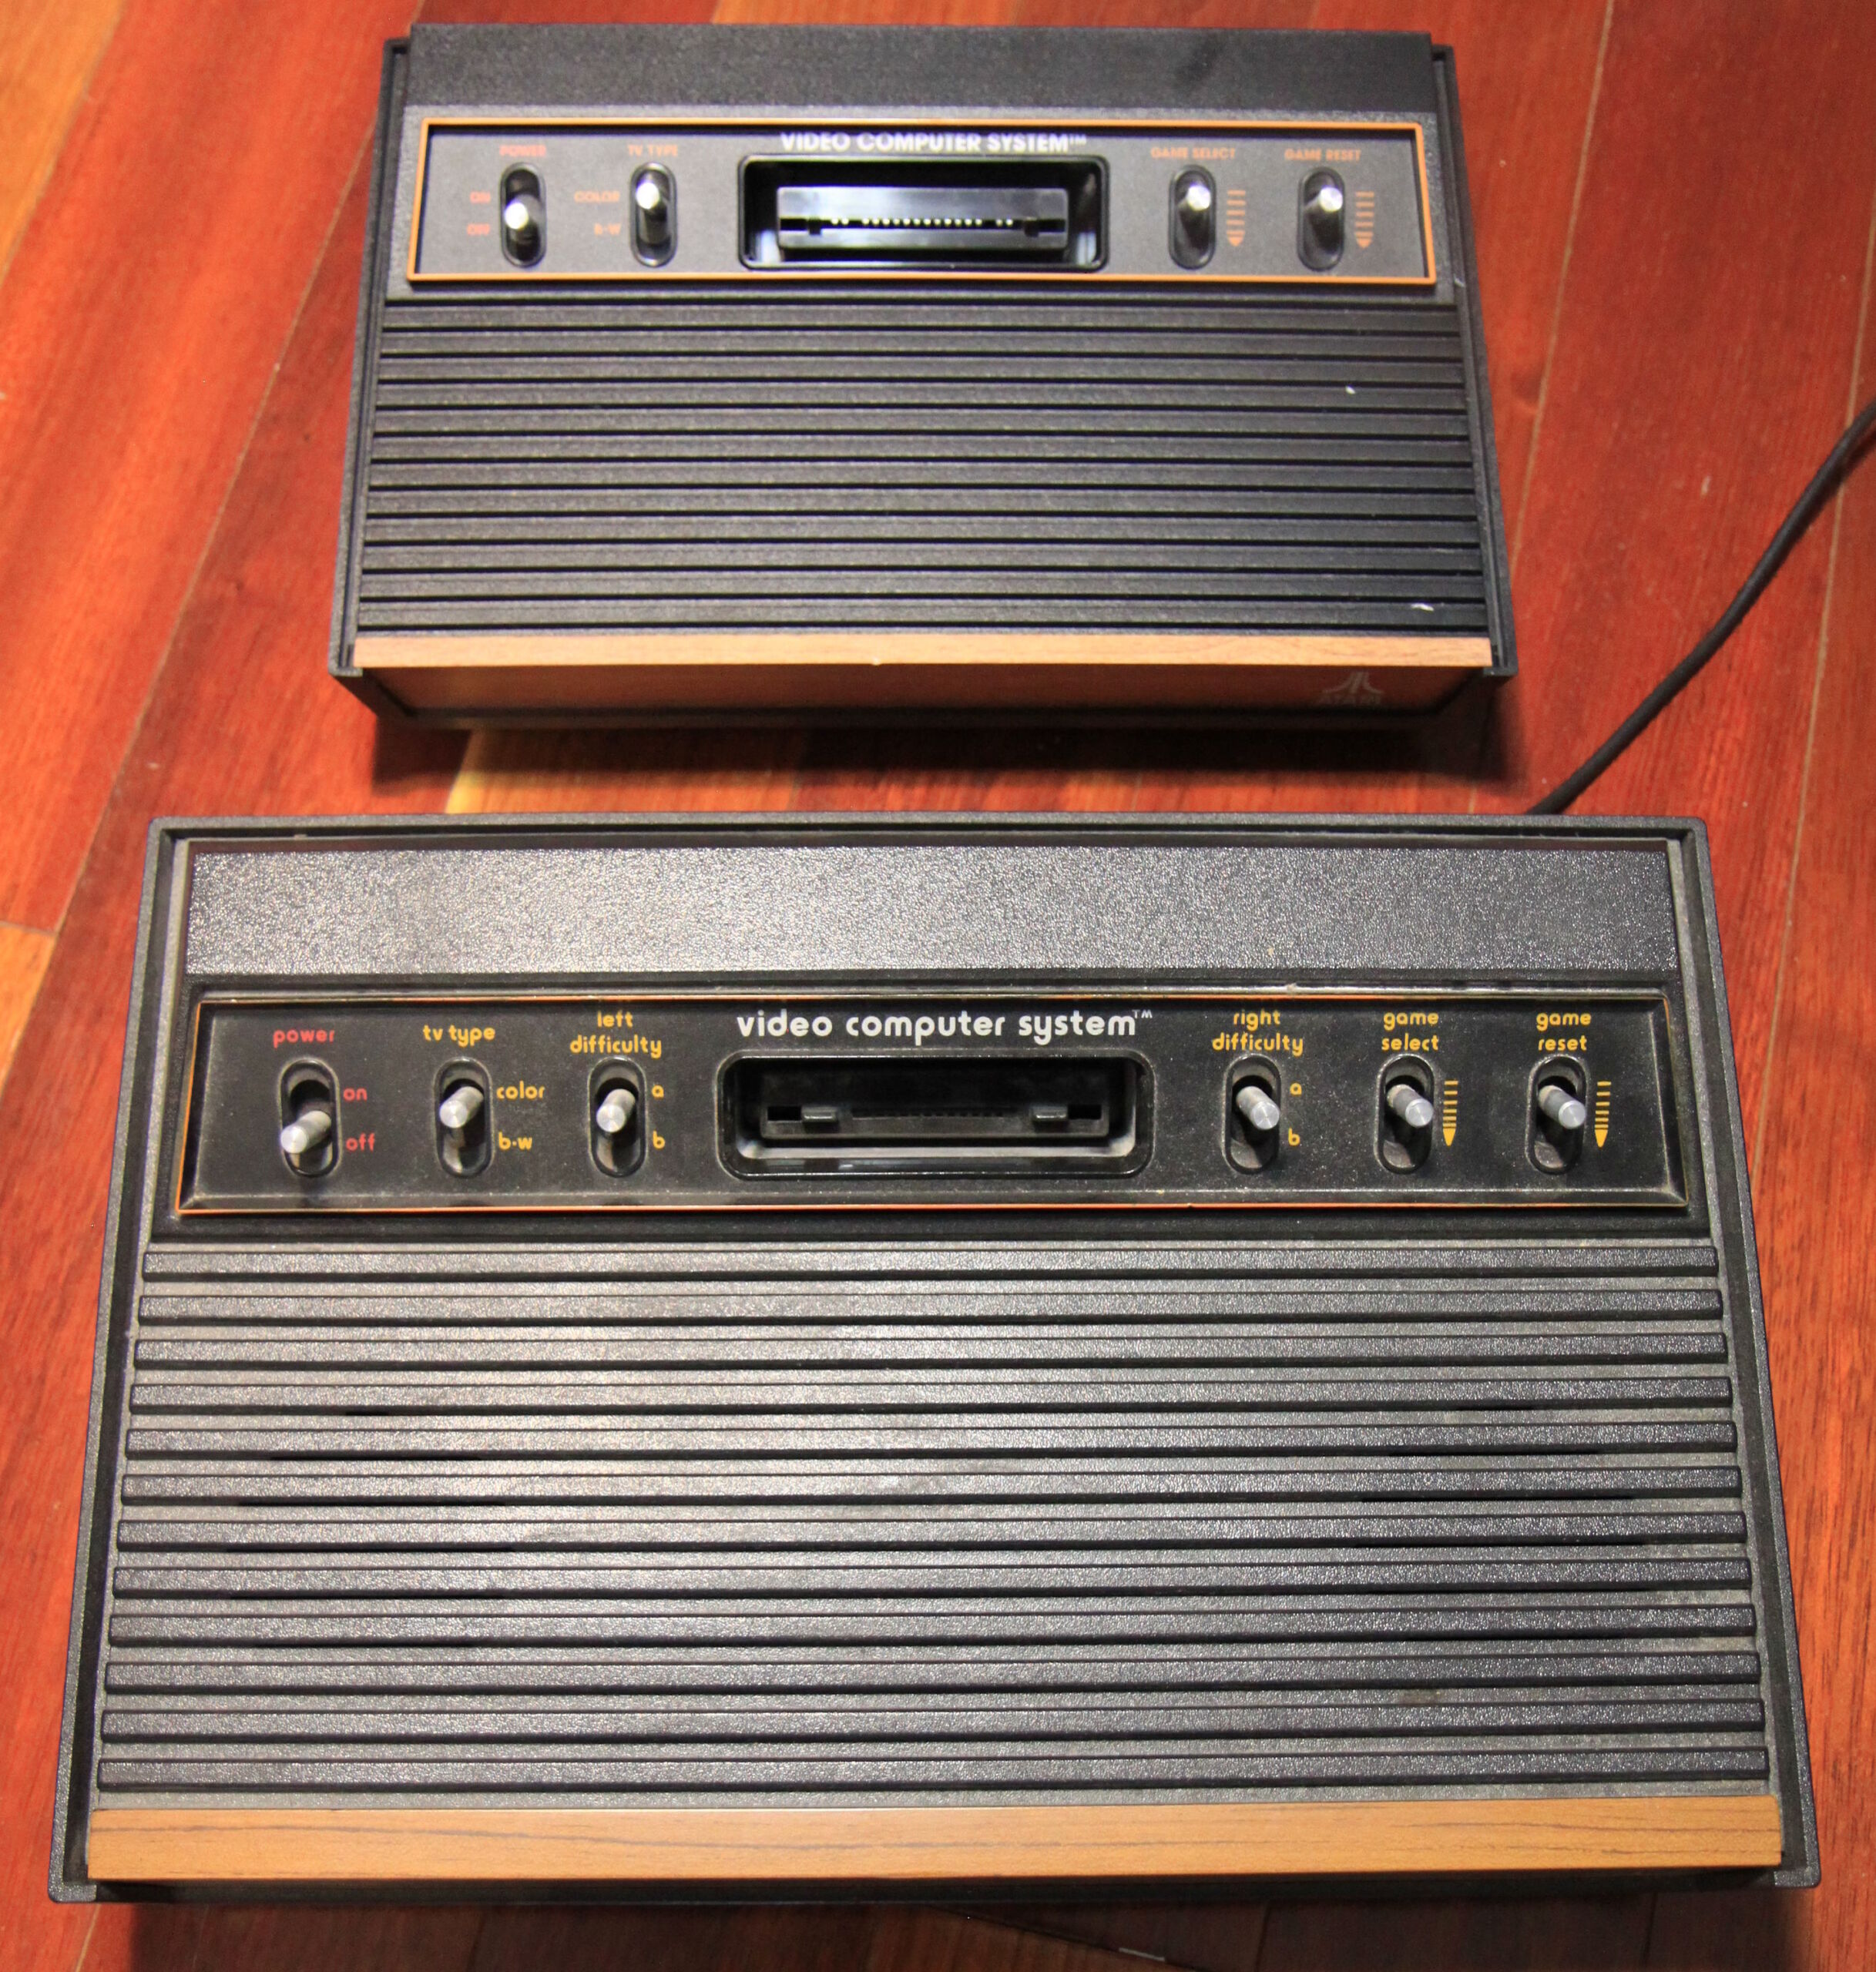 Atari 2600 Plus 10 Games in 1 - Atari 2600